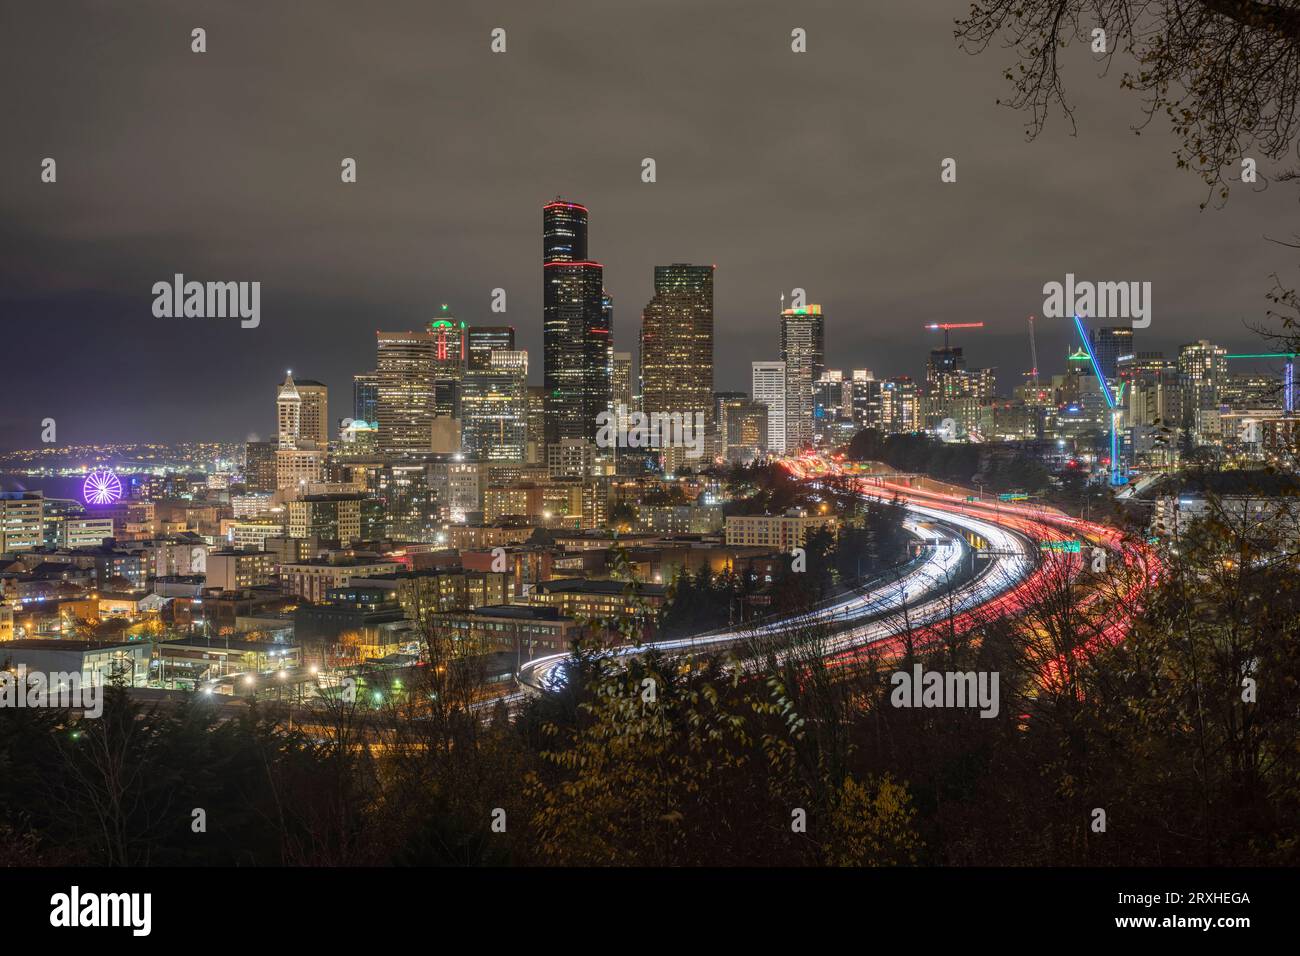 Vista notturna dello skyline di Seattle con traffico sulla i-5 e la grande ruota panoramica di Seattle all'estrema sinistra; Seattle, Washington, Stati Uniti d'America Foto Stock